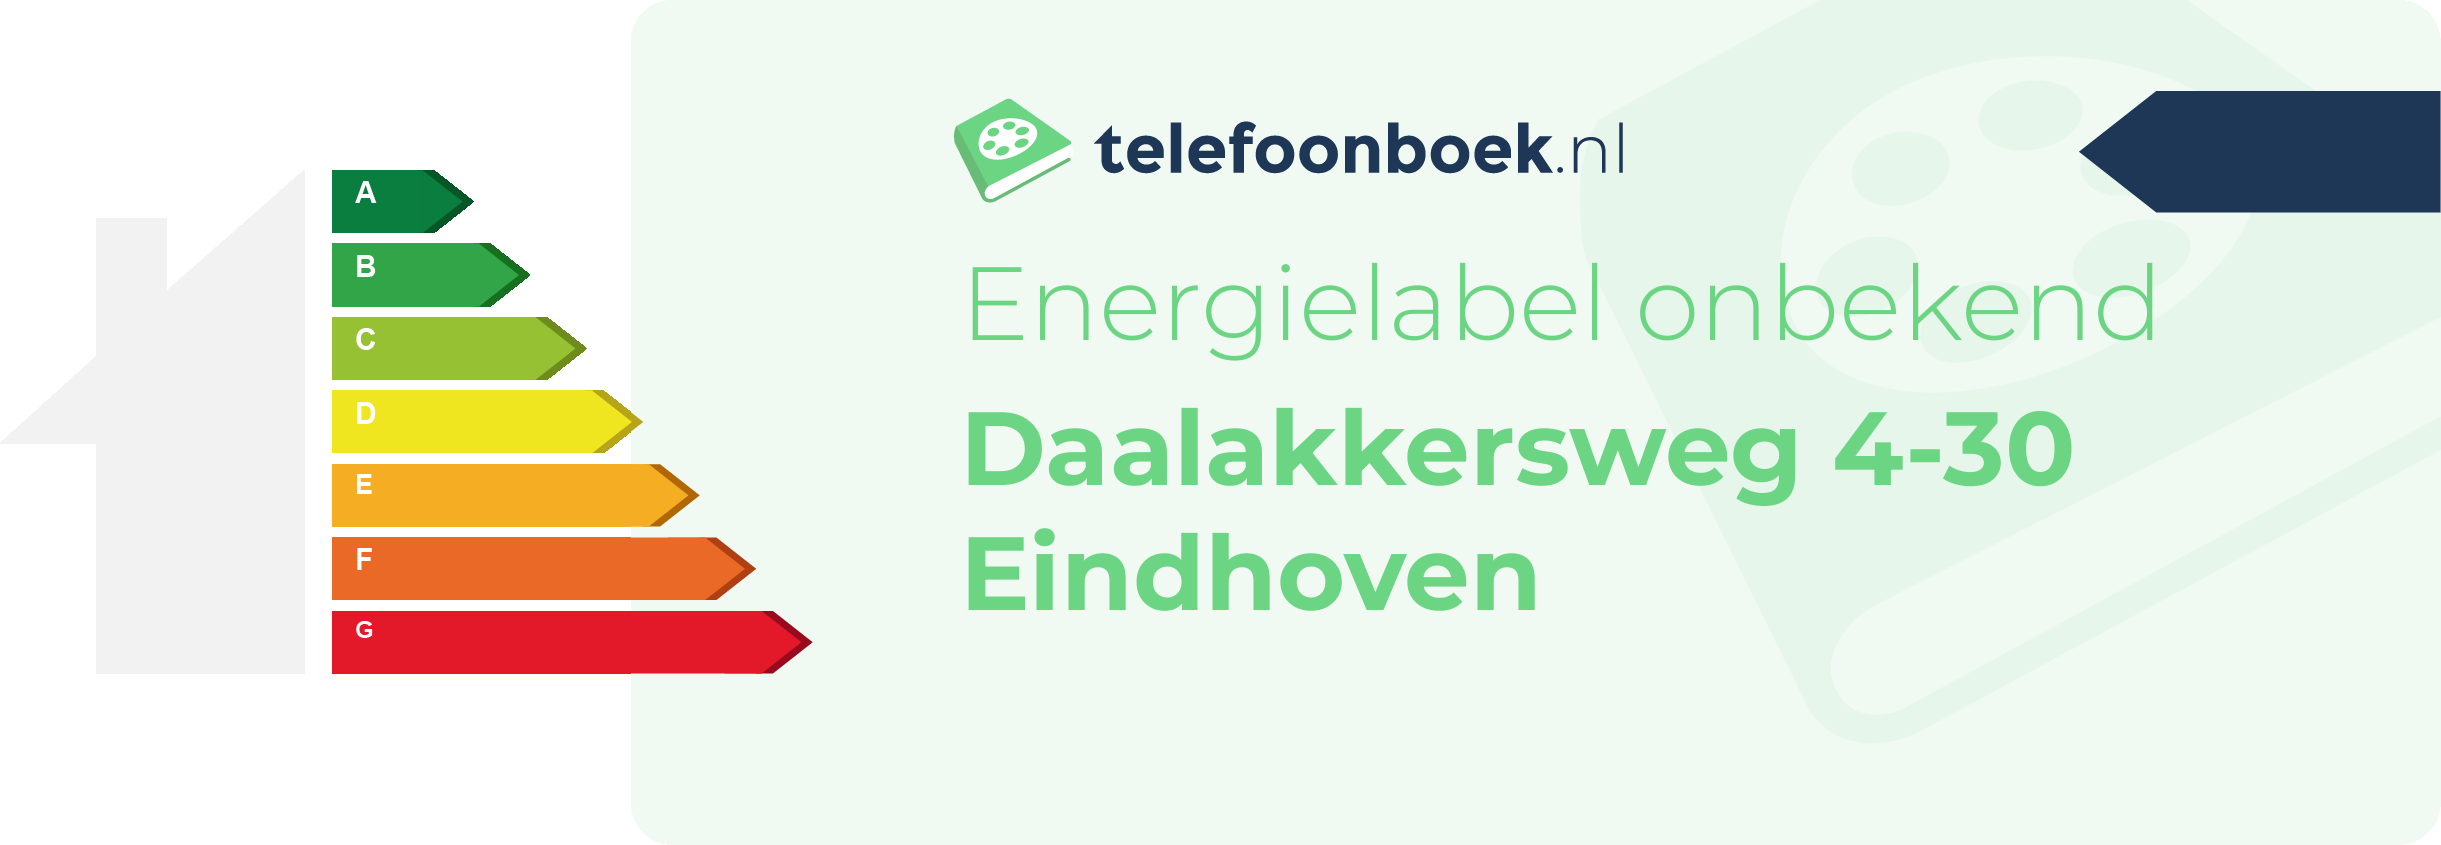 Energielabel Daalakkersweg 4-30 Eindhoven